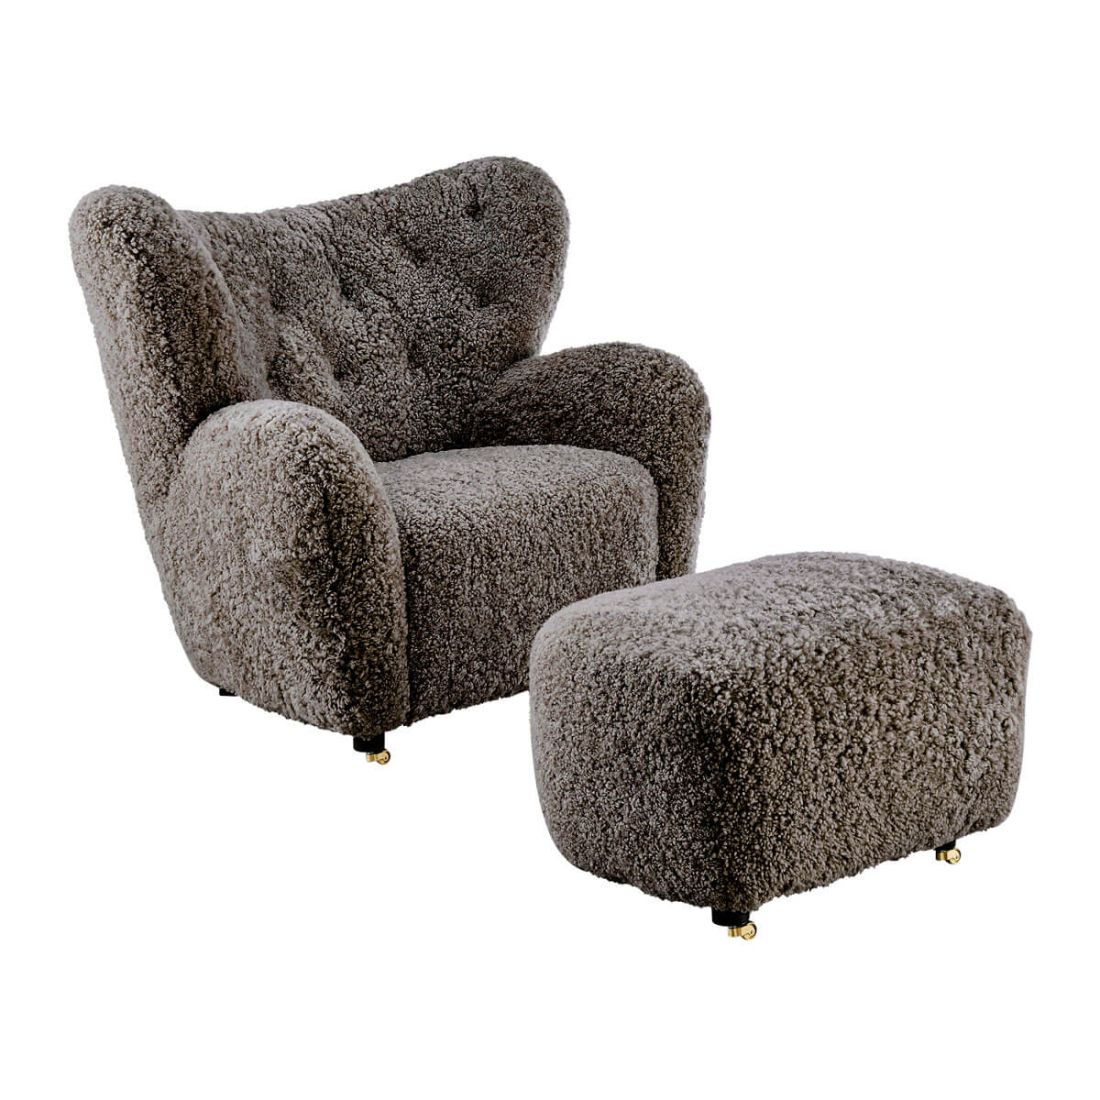 Flemming Lassen The Tired Man Lounge Chair & Footstool in Genuine Sheepskin-Cafe Noir | Eternity Modern